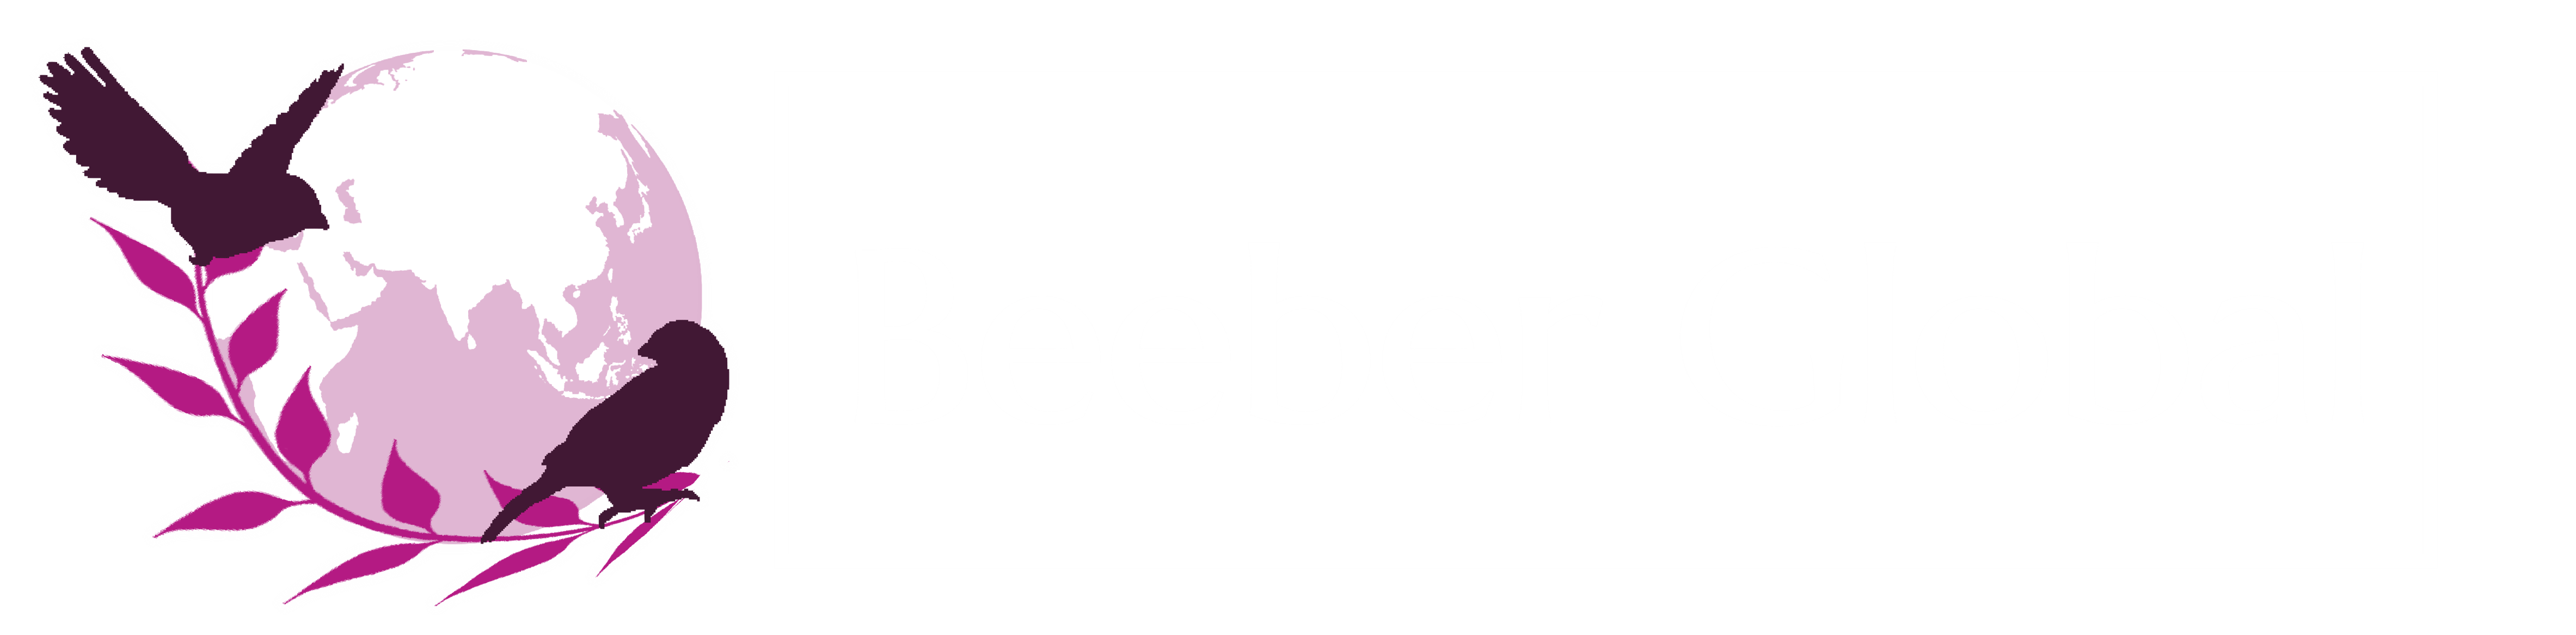 Beeber Global